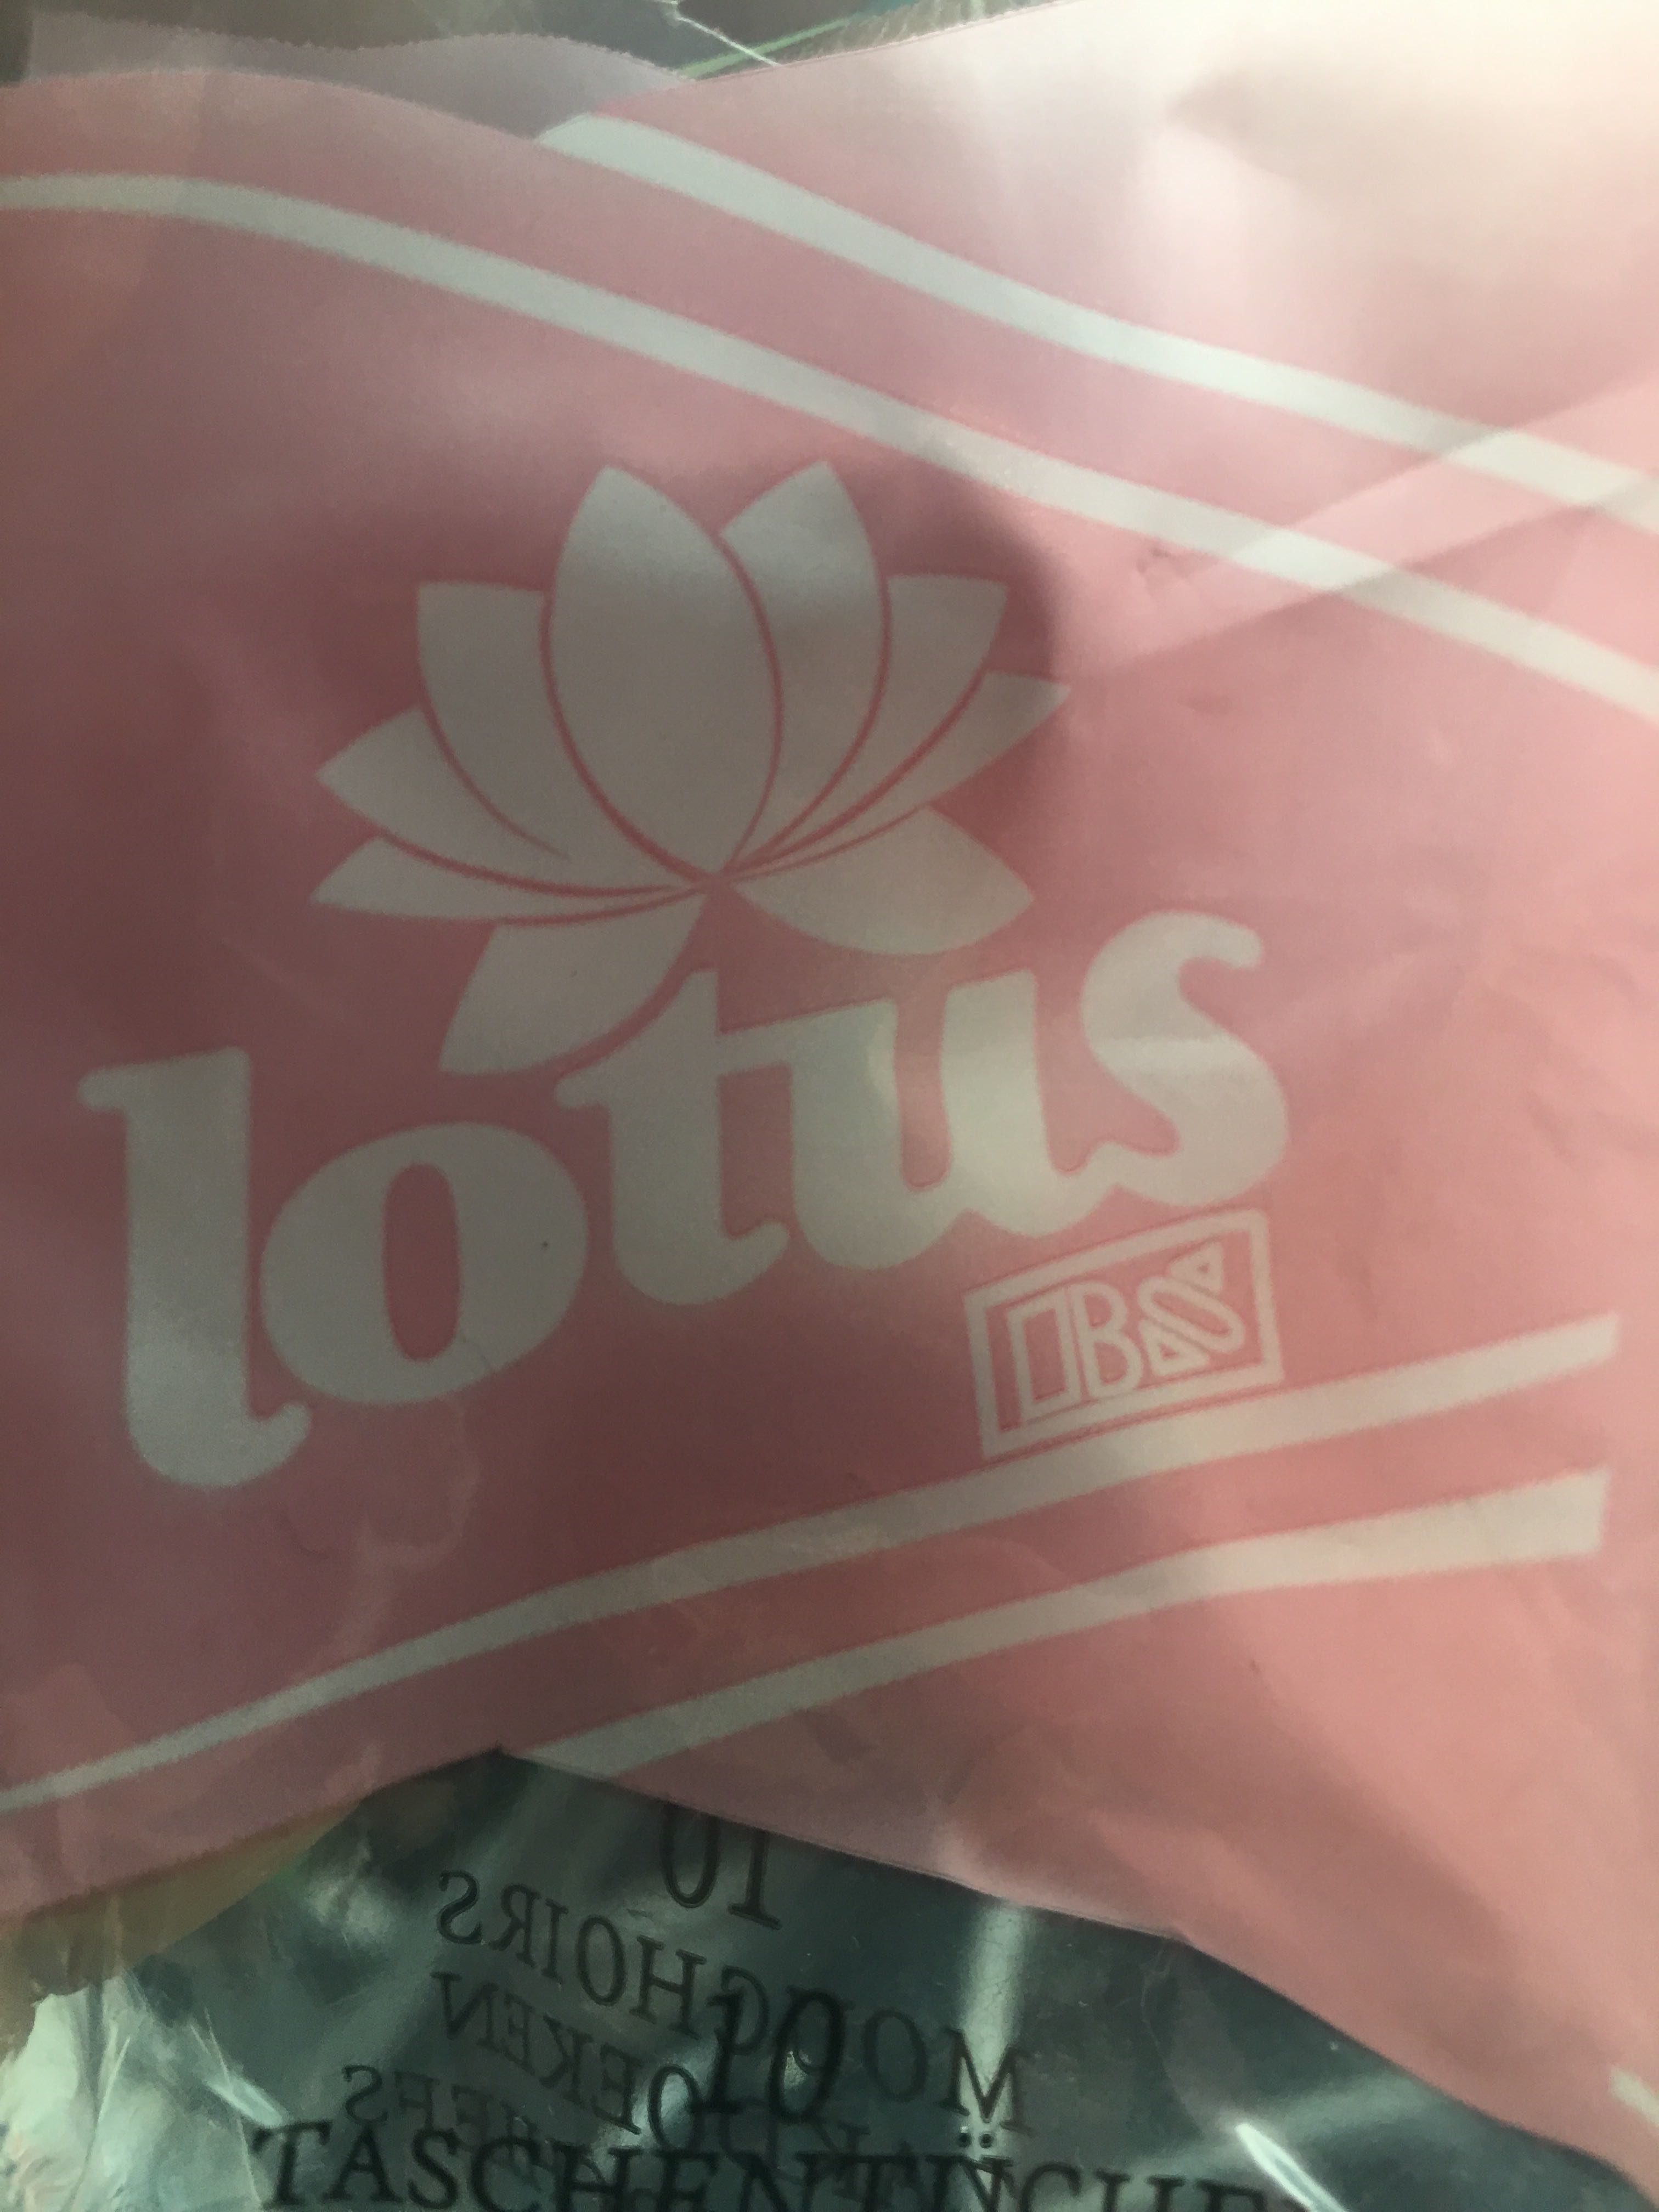 Lotus mouchoir en papier - Produit - fr